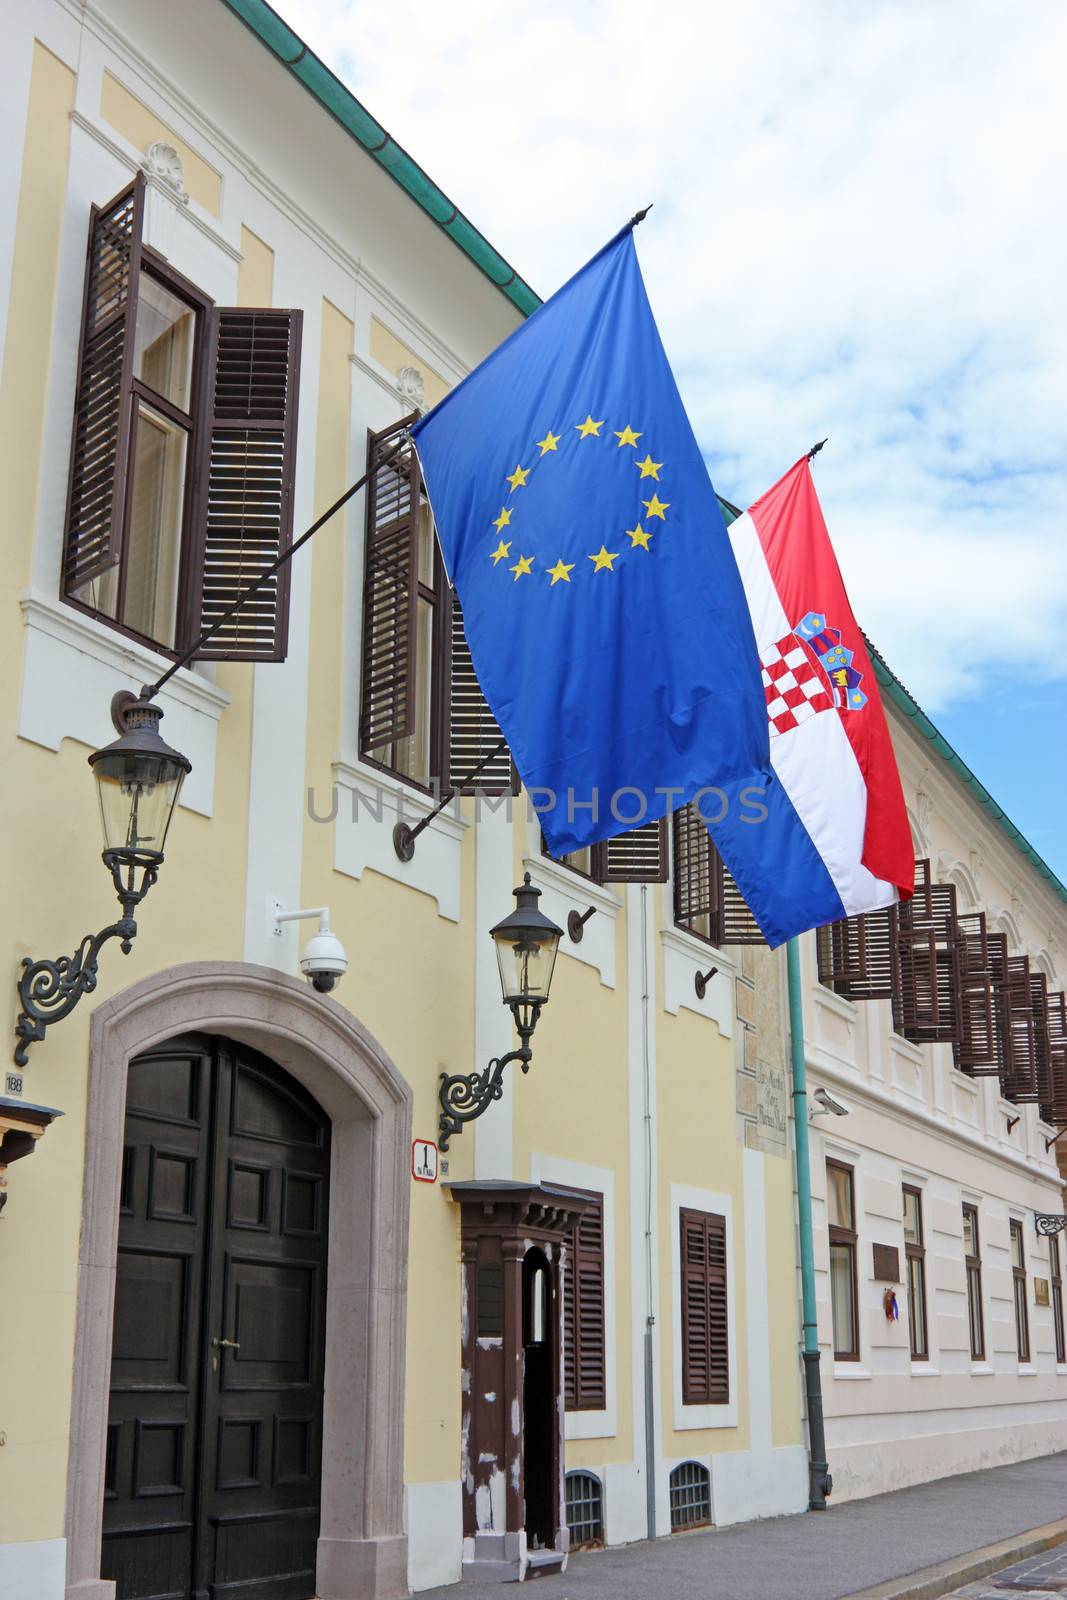 Flags of European Union and Croatia